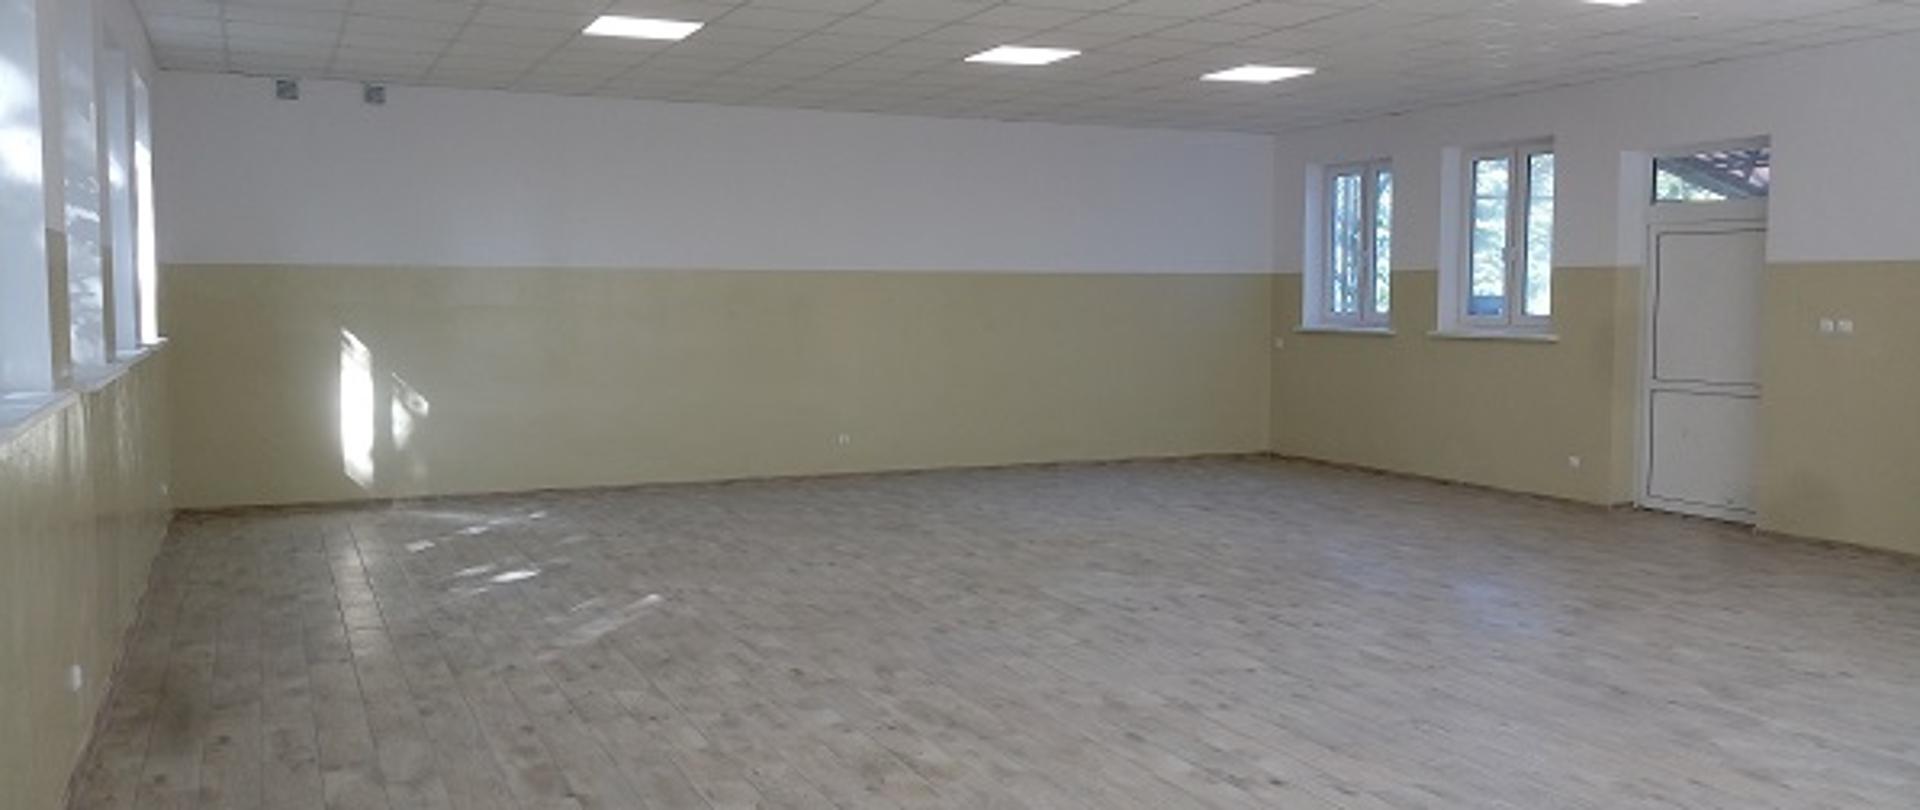 Na zdjęciu widoczne wnętrze sali w remizie OSP Nowe Budy. Ściany pomalowane na kolor biały i ecru. Podłoga i sufit w jasnym kolorze.